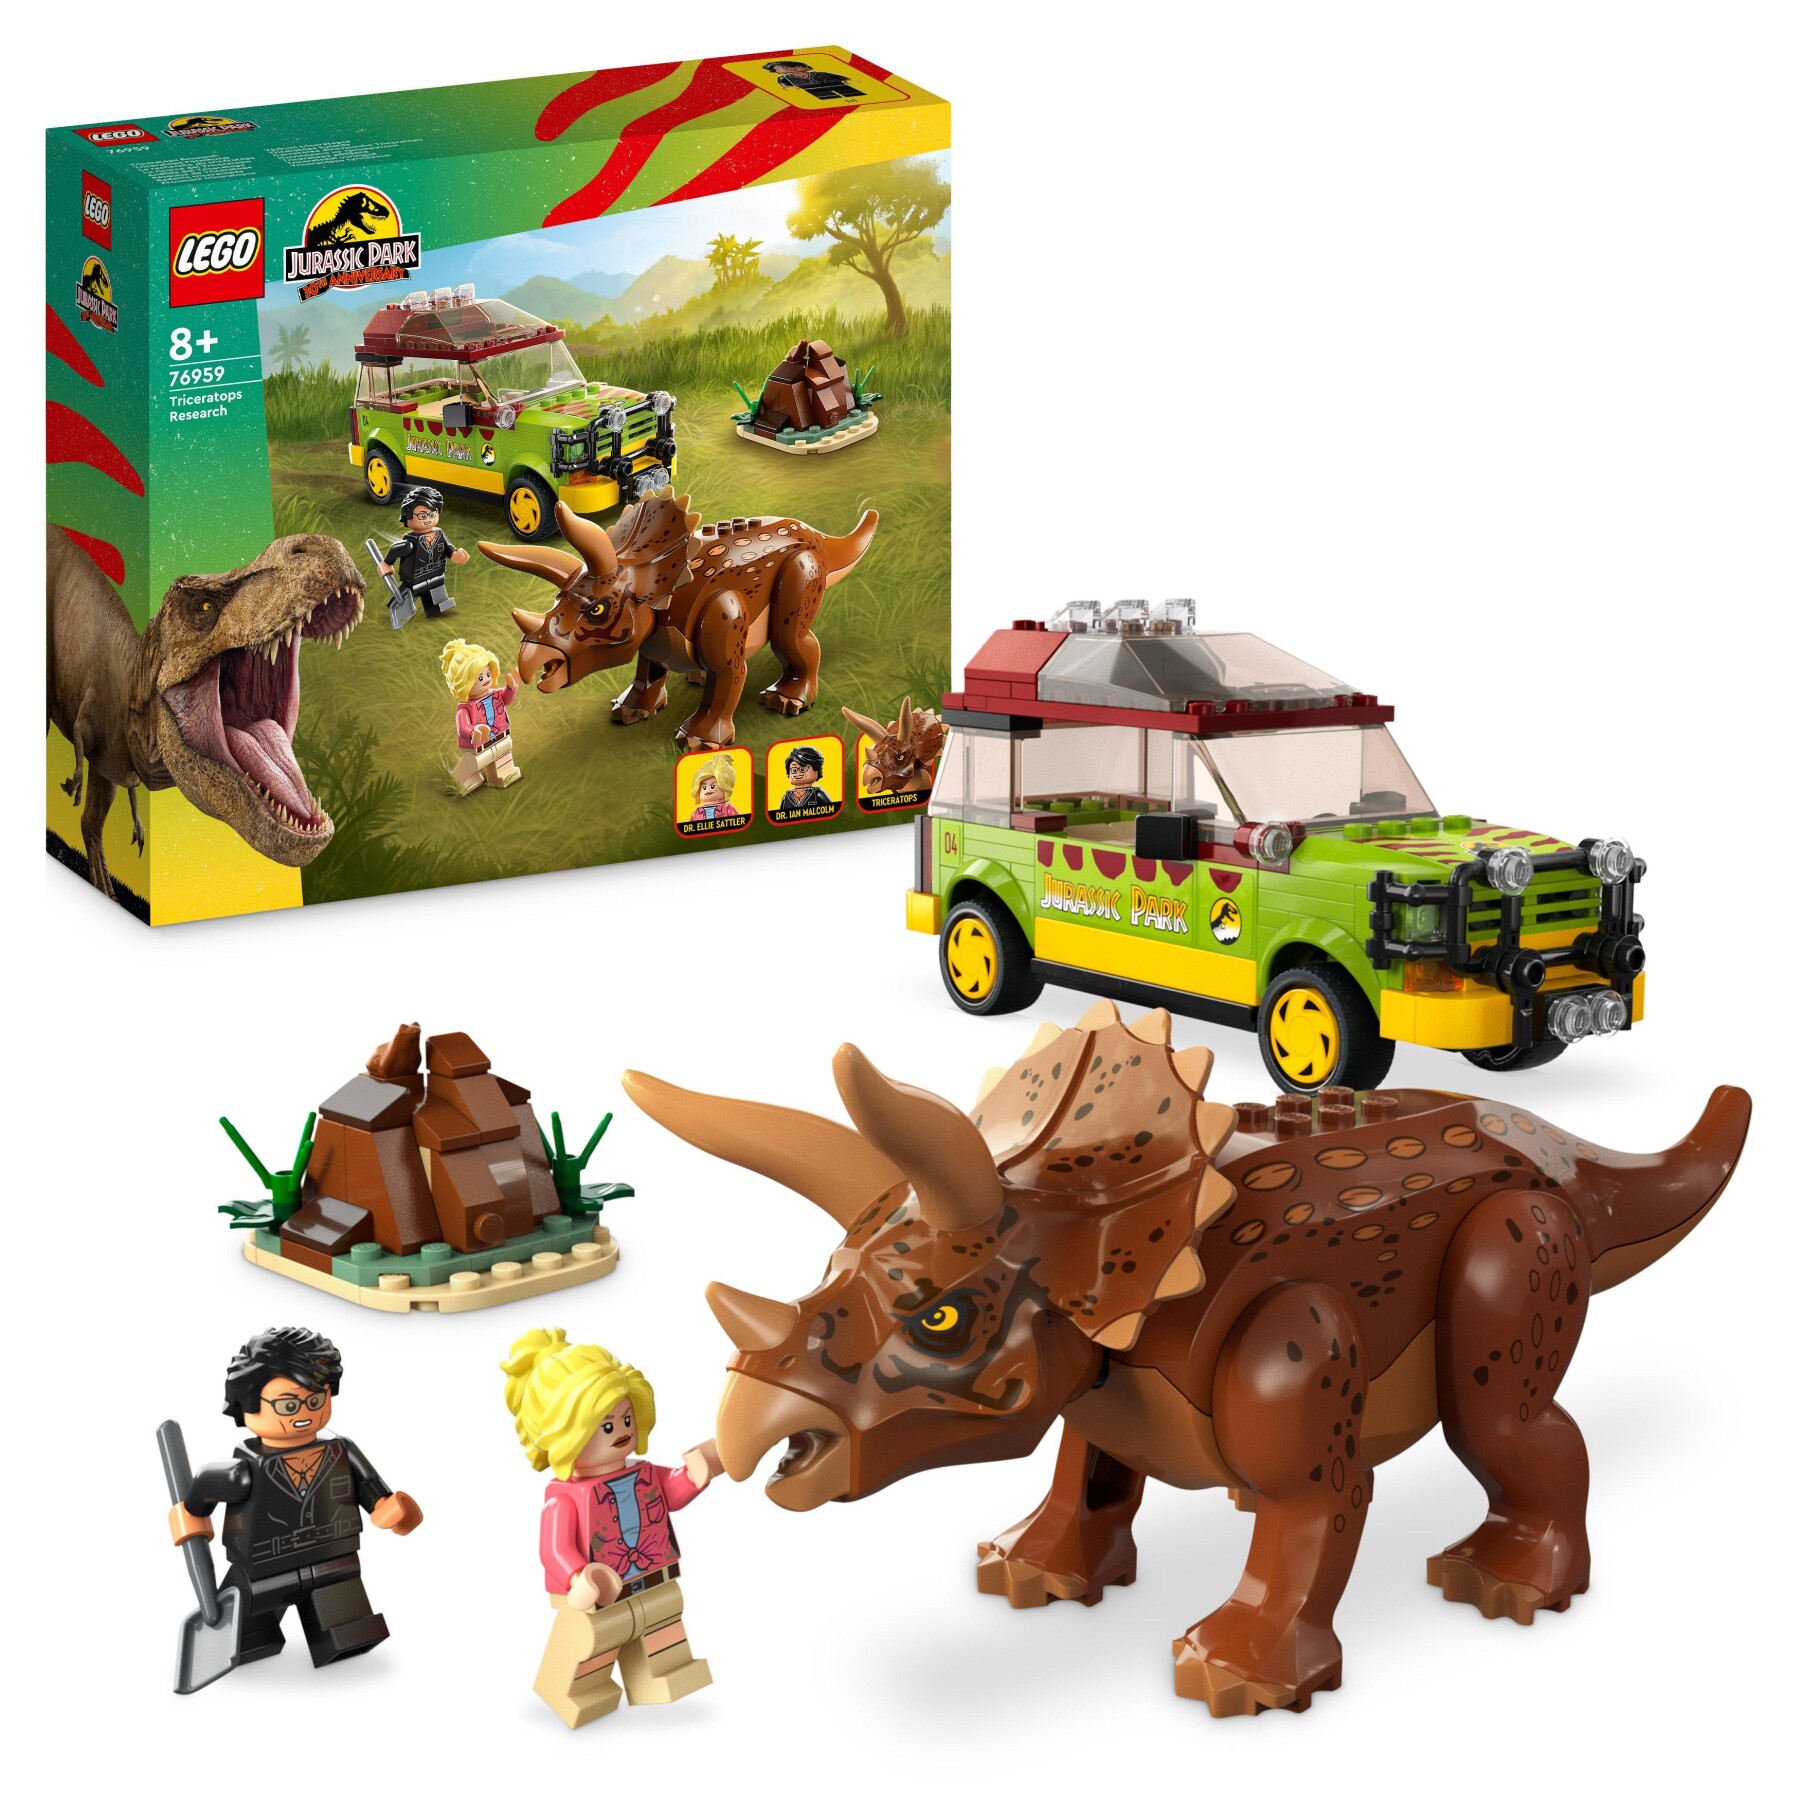 Lego jurassic park 76959 la ricerca del triceratopo, dinosauro